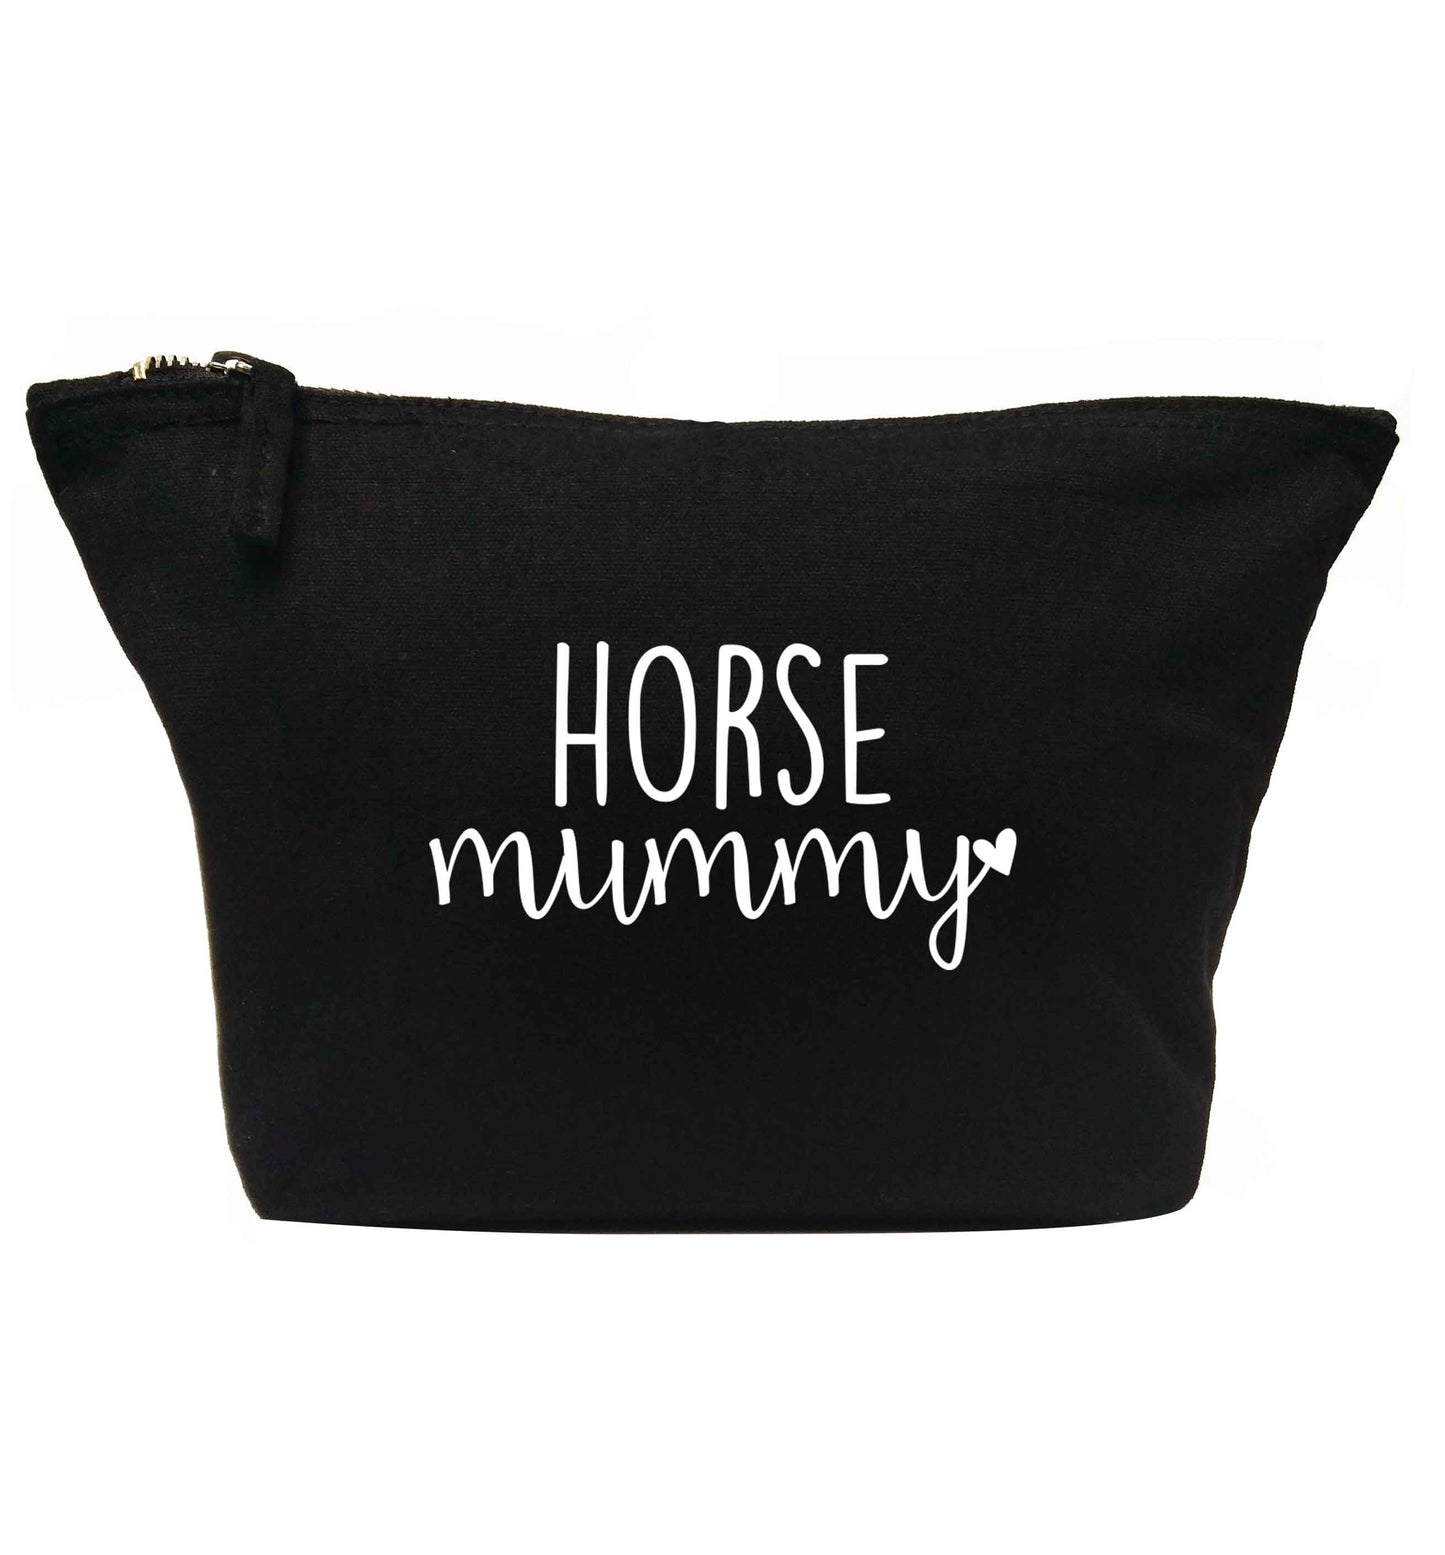 Horse mummy | Makeup / wash bag